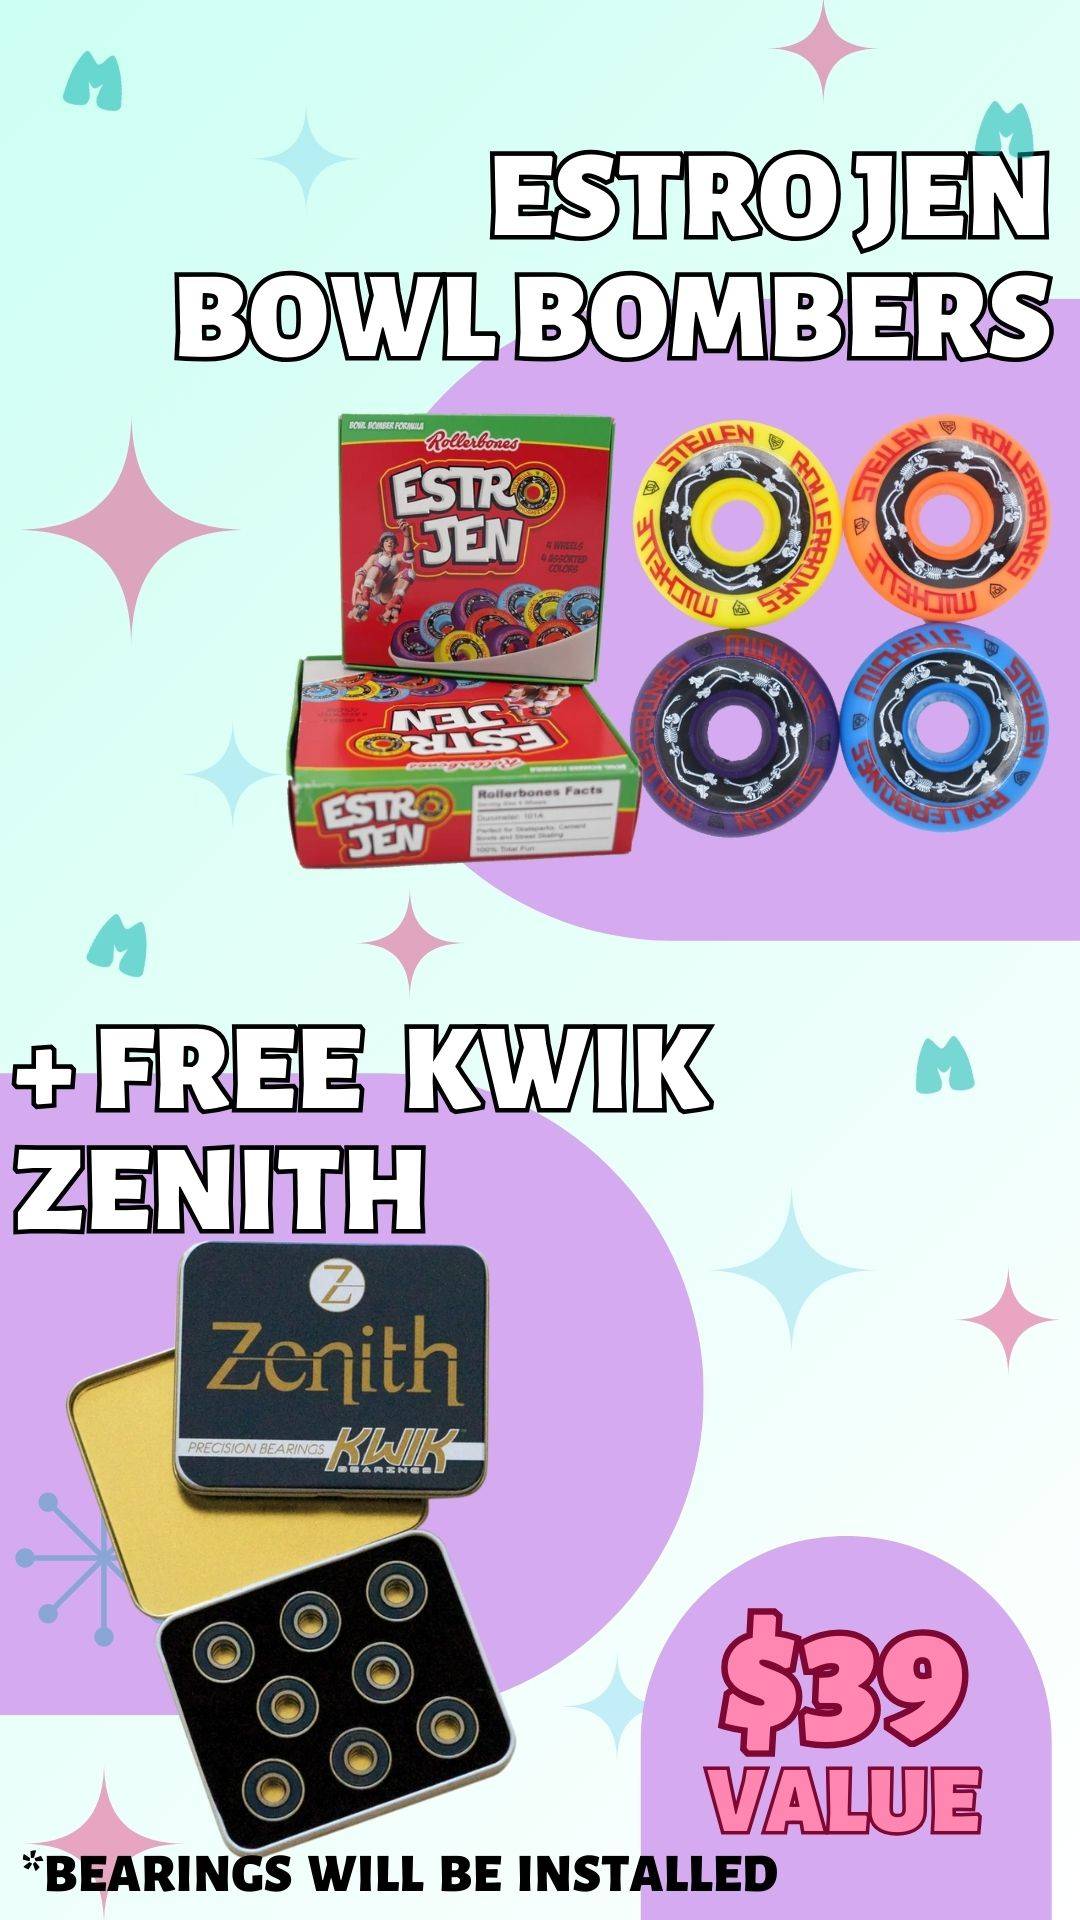 Estro Jen Bowl Bombers + Free Kwik Zenith Bearings. $39 value. Bearings will be installed